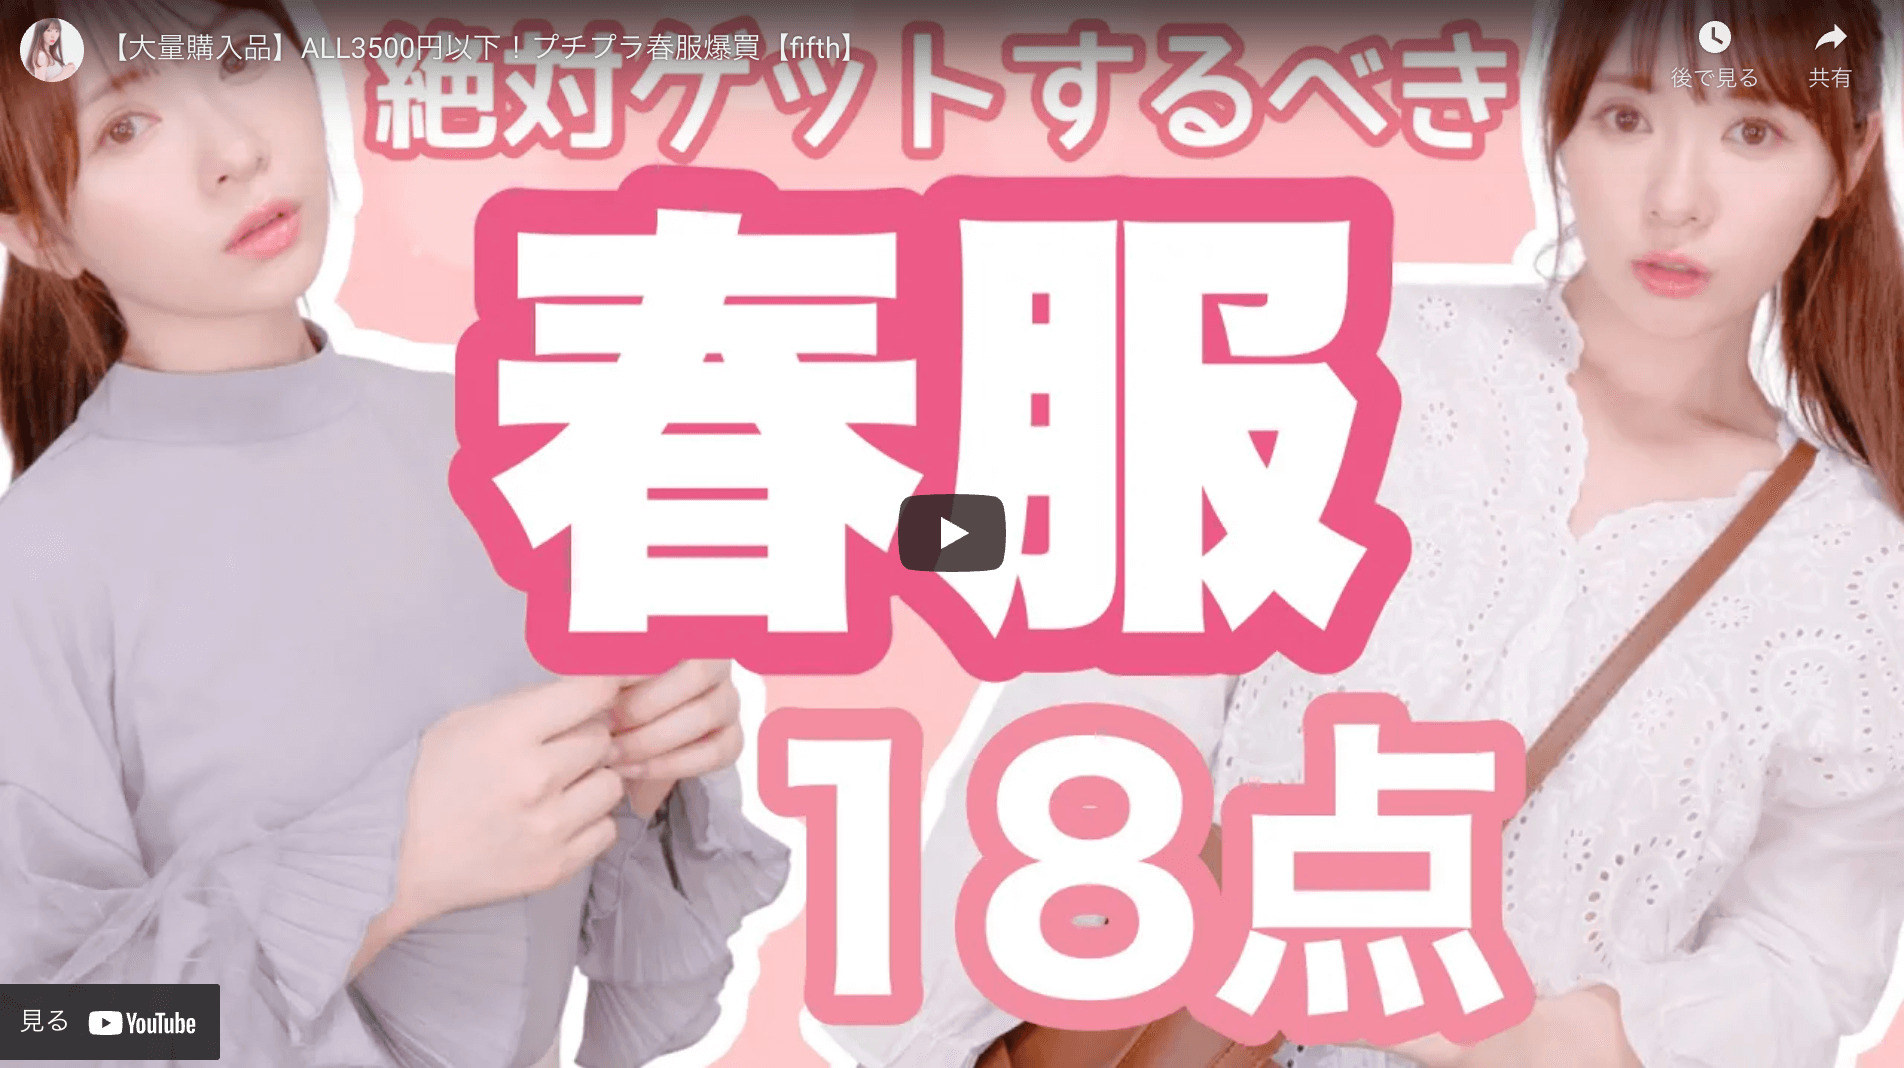 かわにしみきさんが“fifthの春服 爆買い購入品”を紹介する動画を公開！